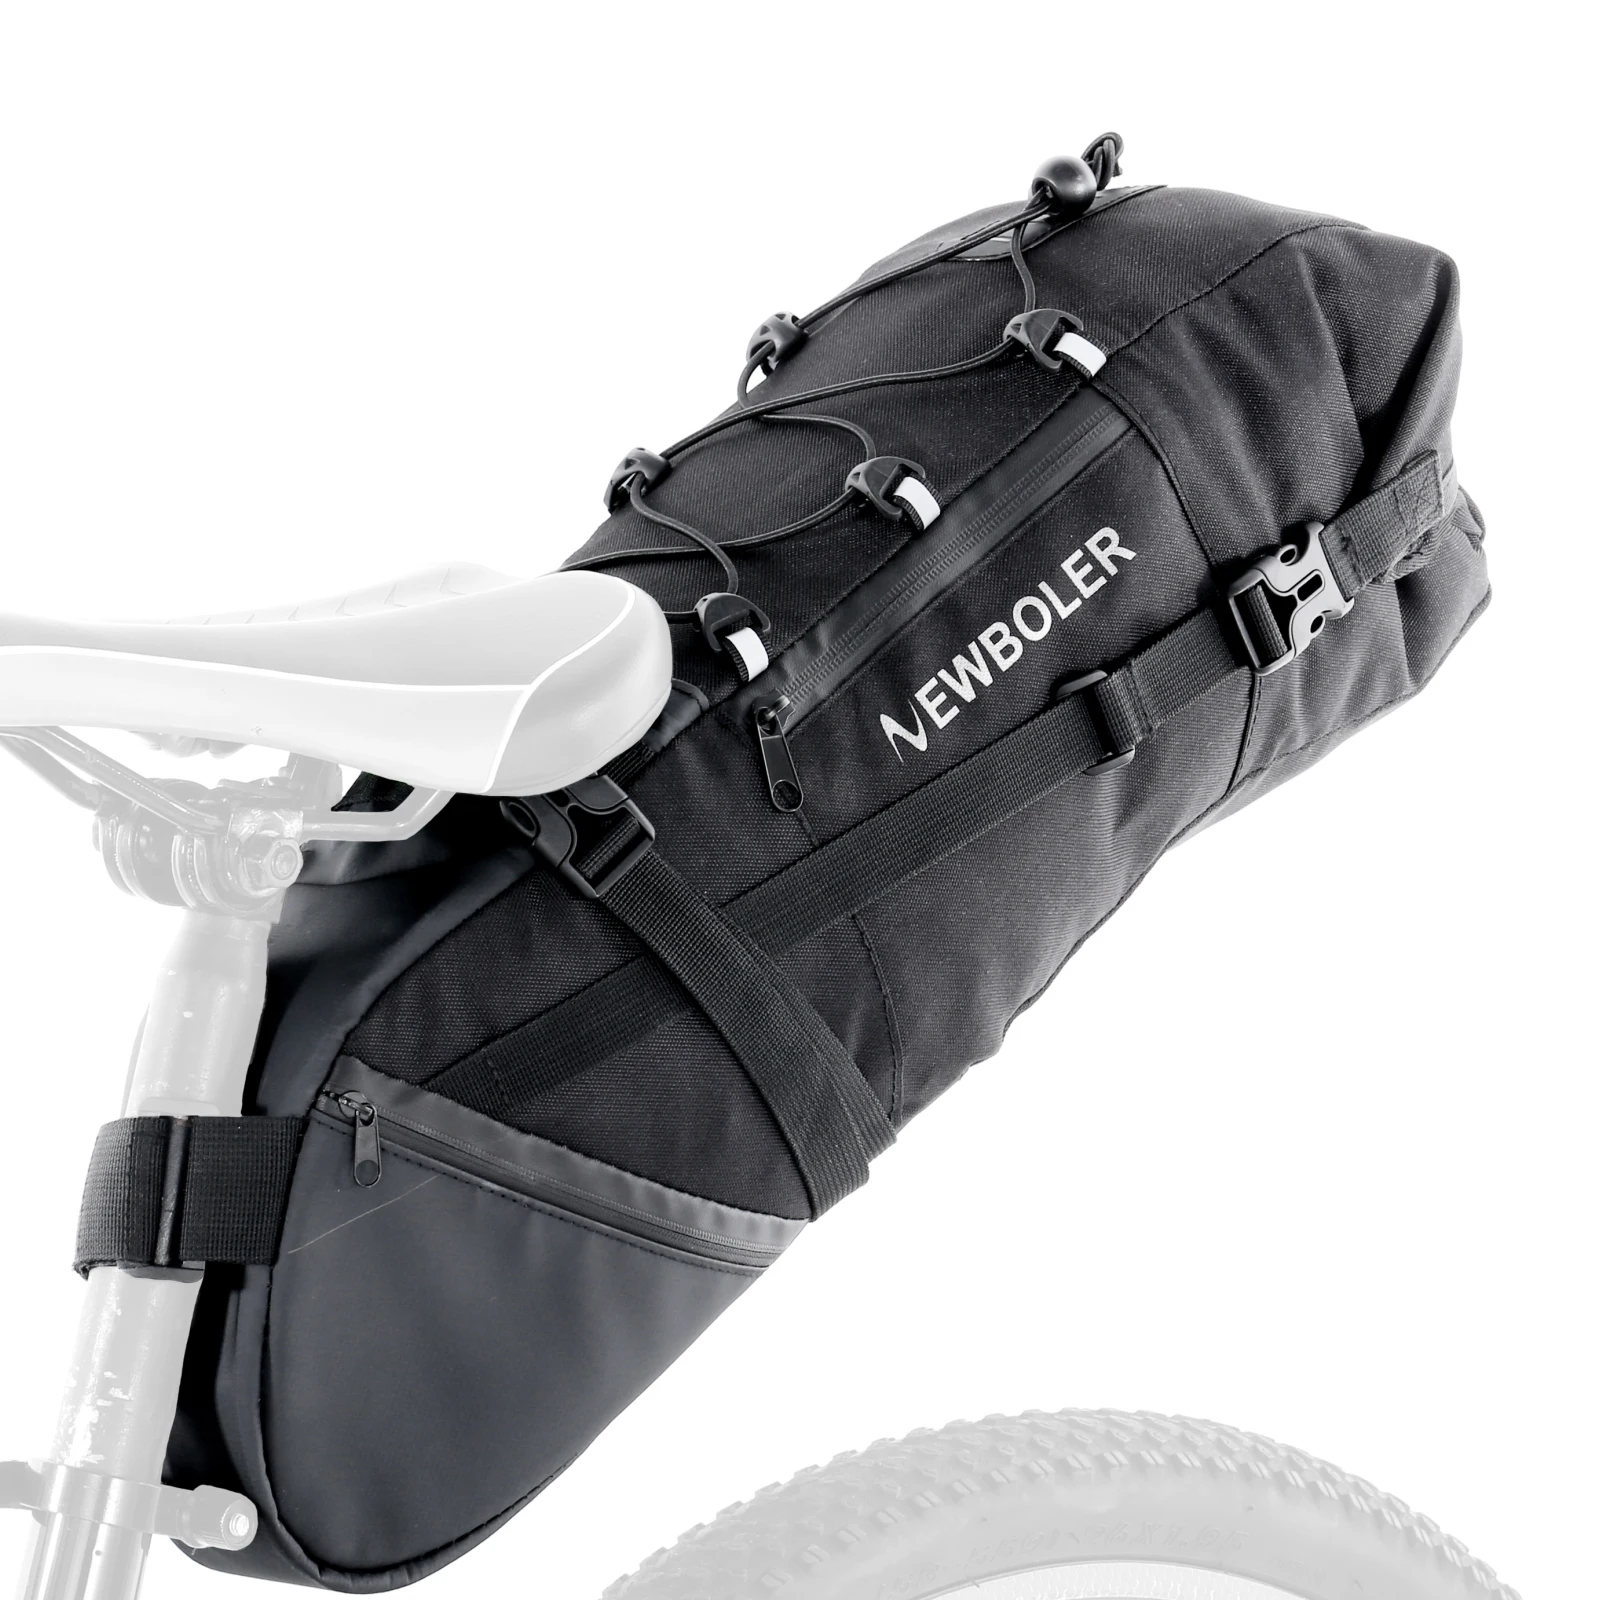 

Сумка на седло для велосипеда, вместительная велосипедная сумка 3-10 л, для горных и дорожных велосипедов, сумка для хранения, под сиденье